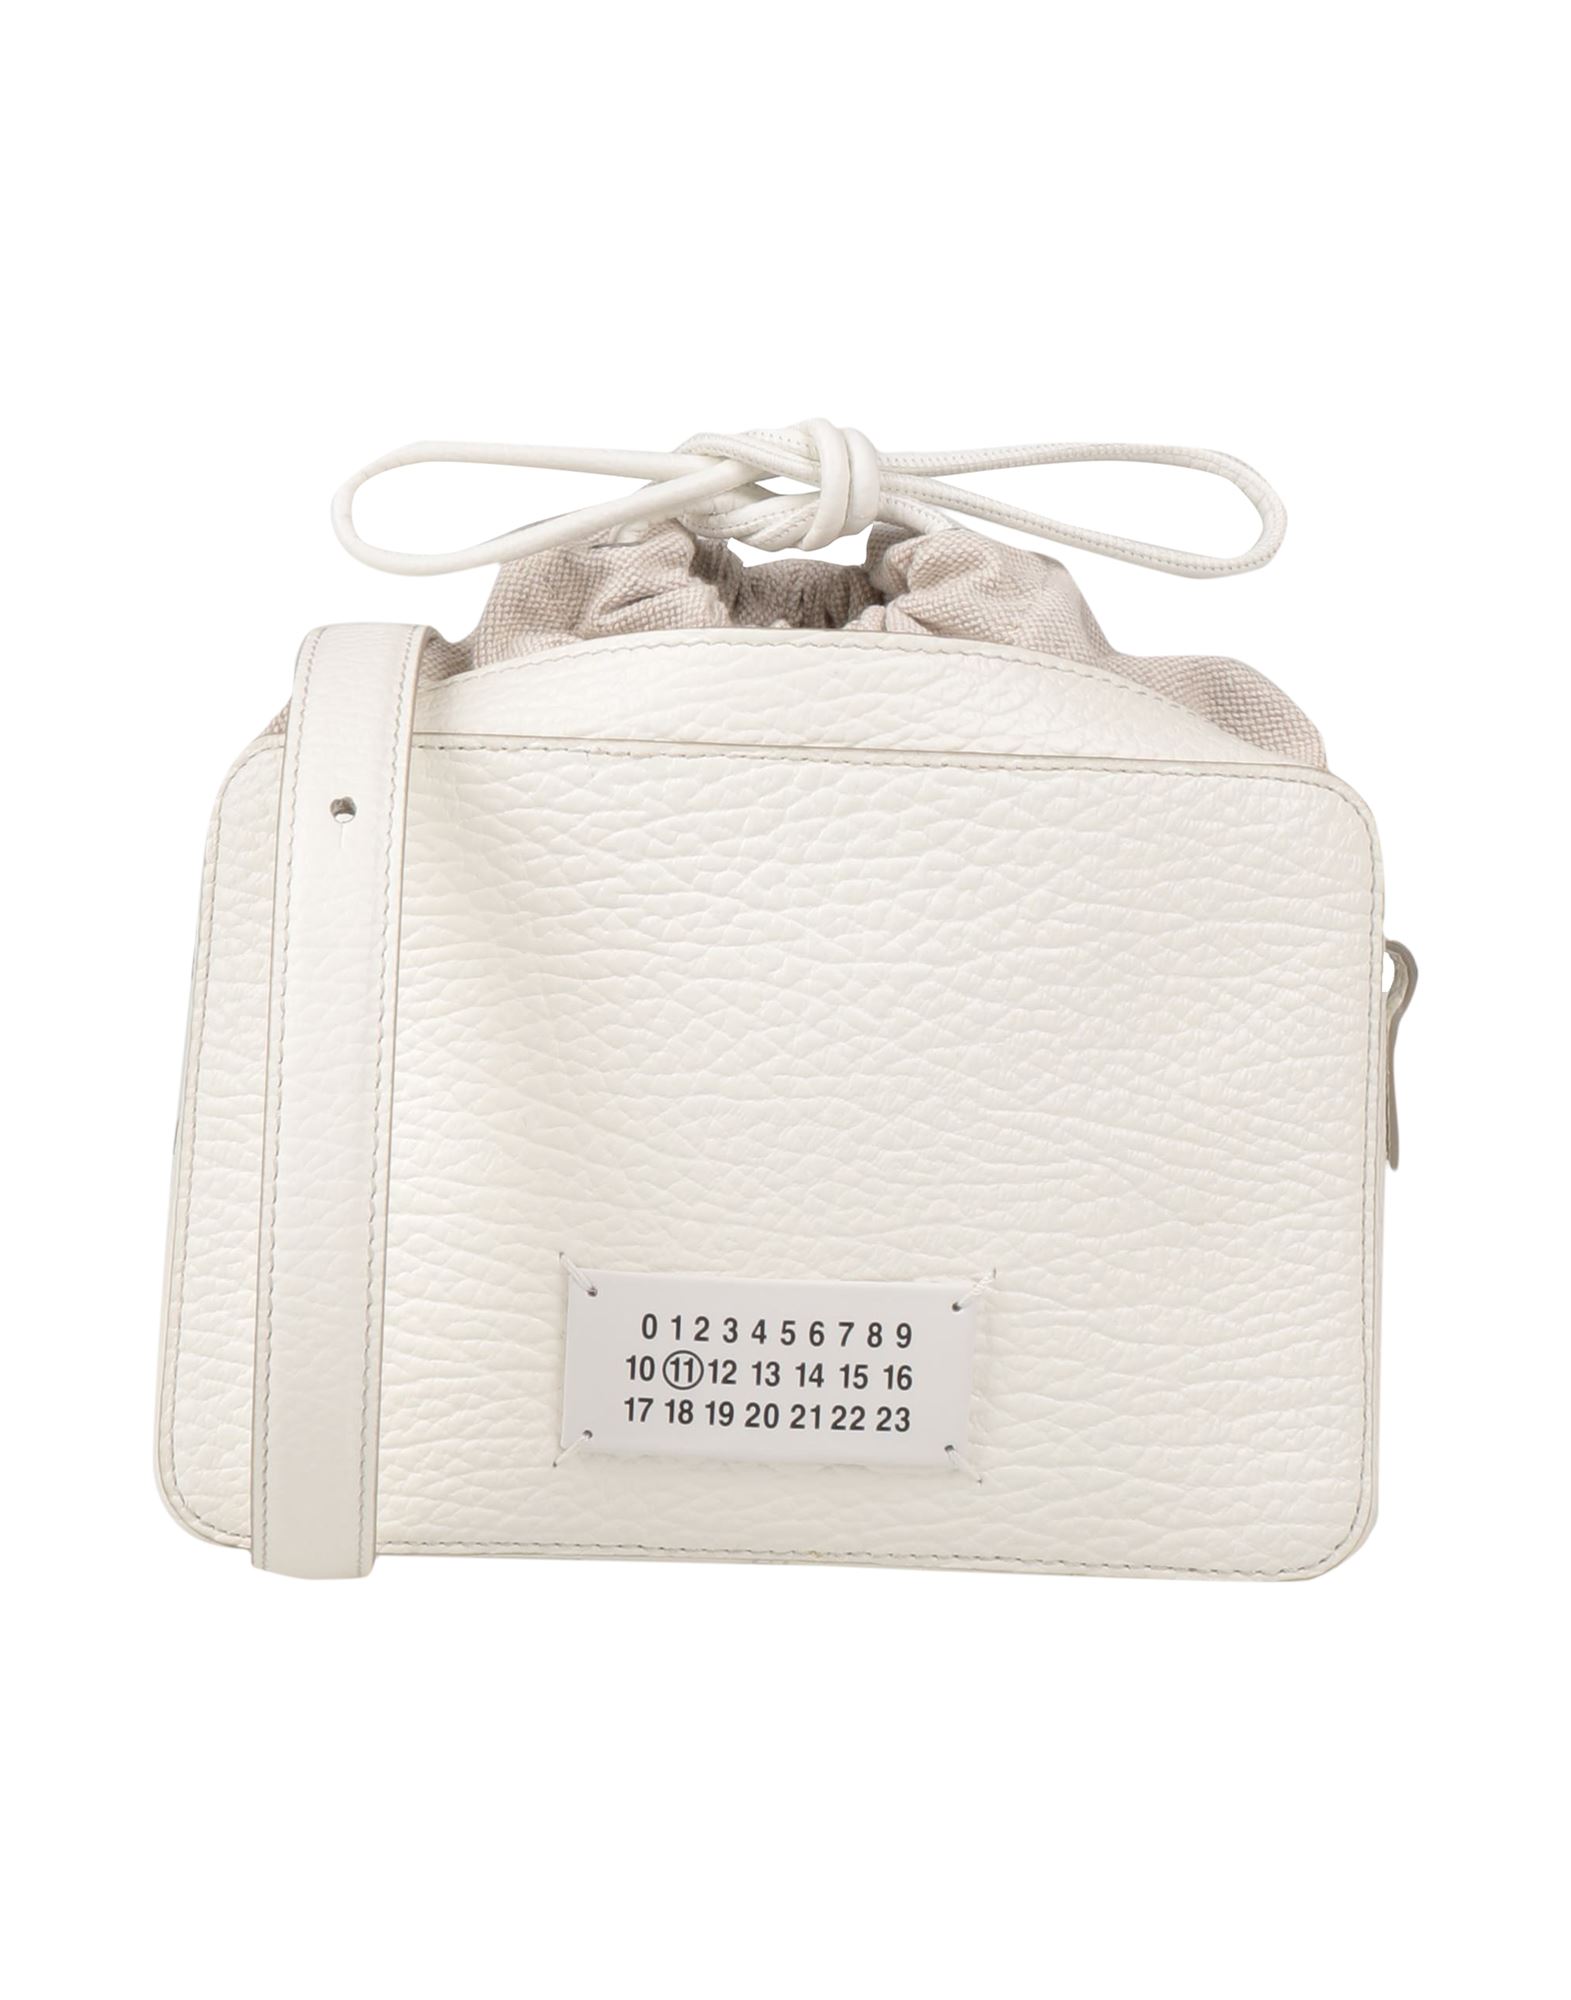 Maison Margiela Handbags In White